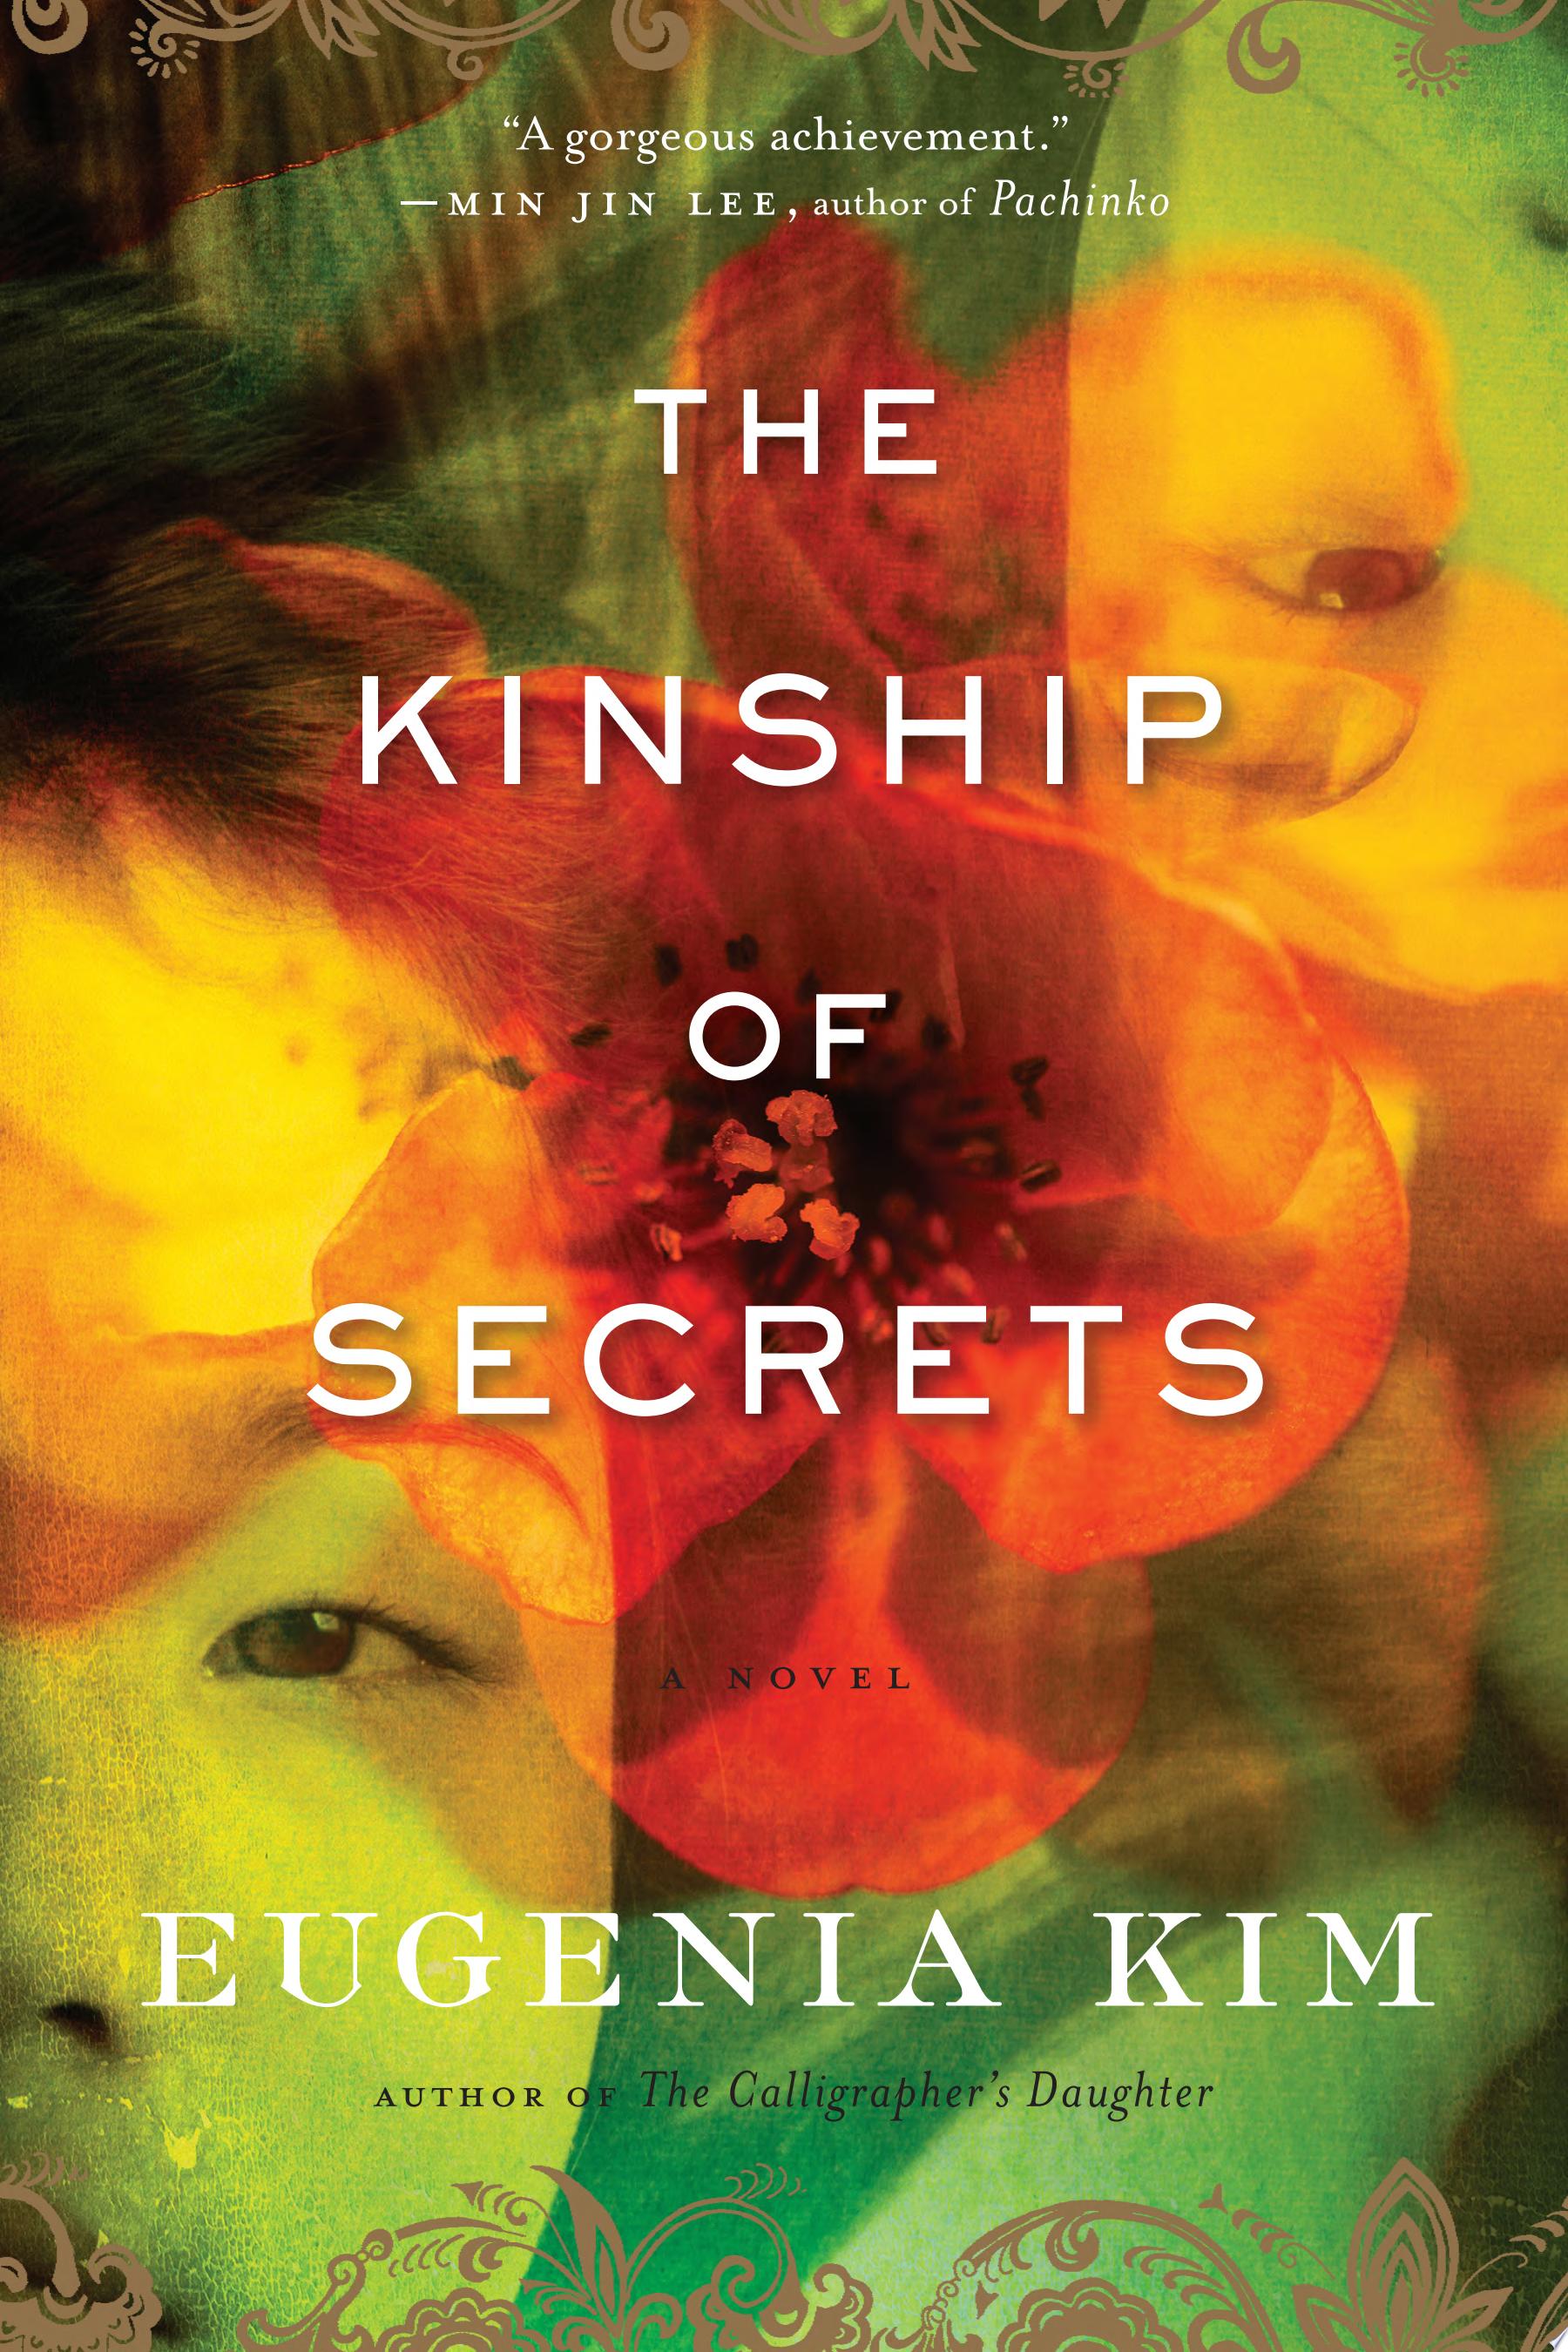 Image for "The Kinship of Secrets"